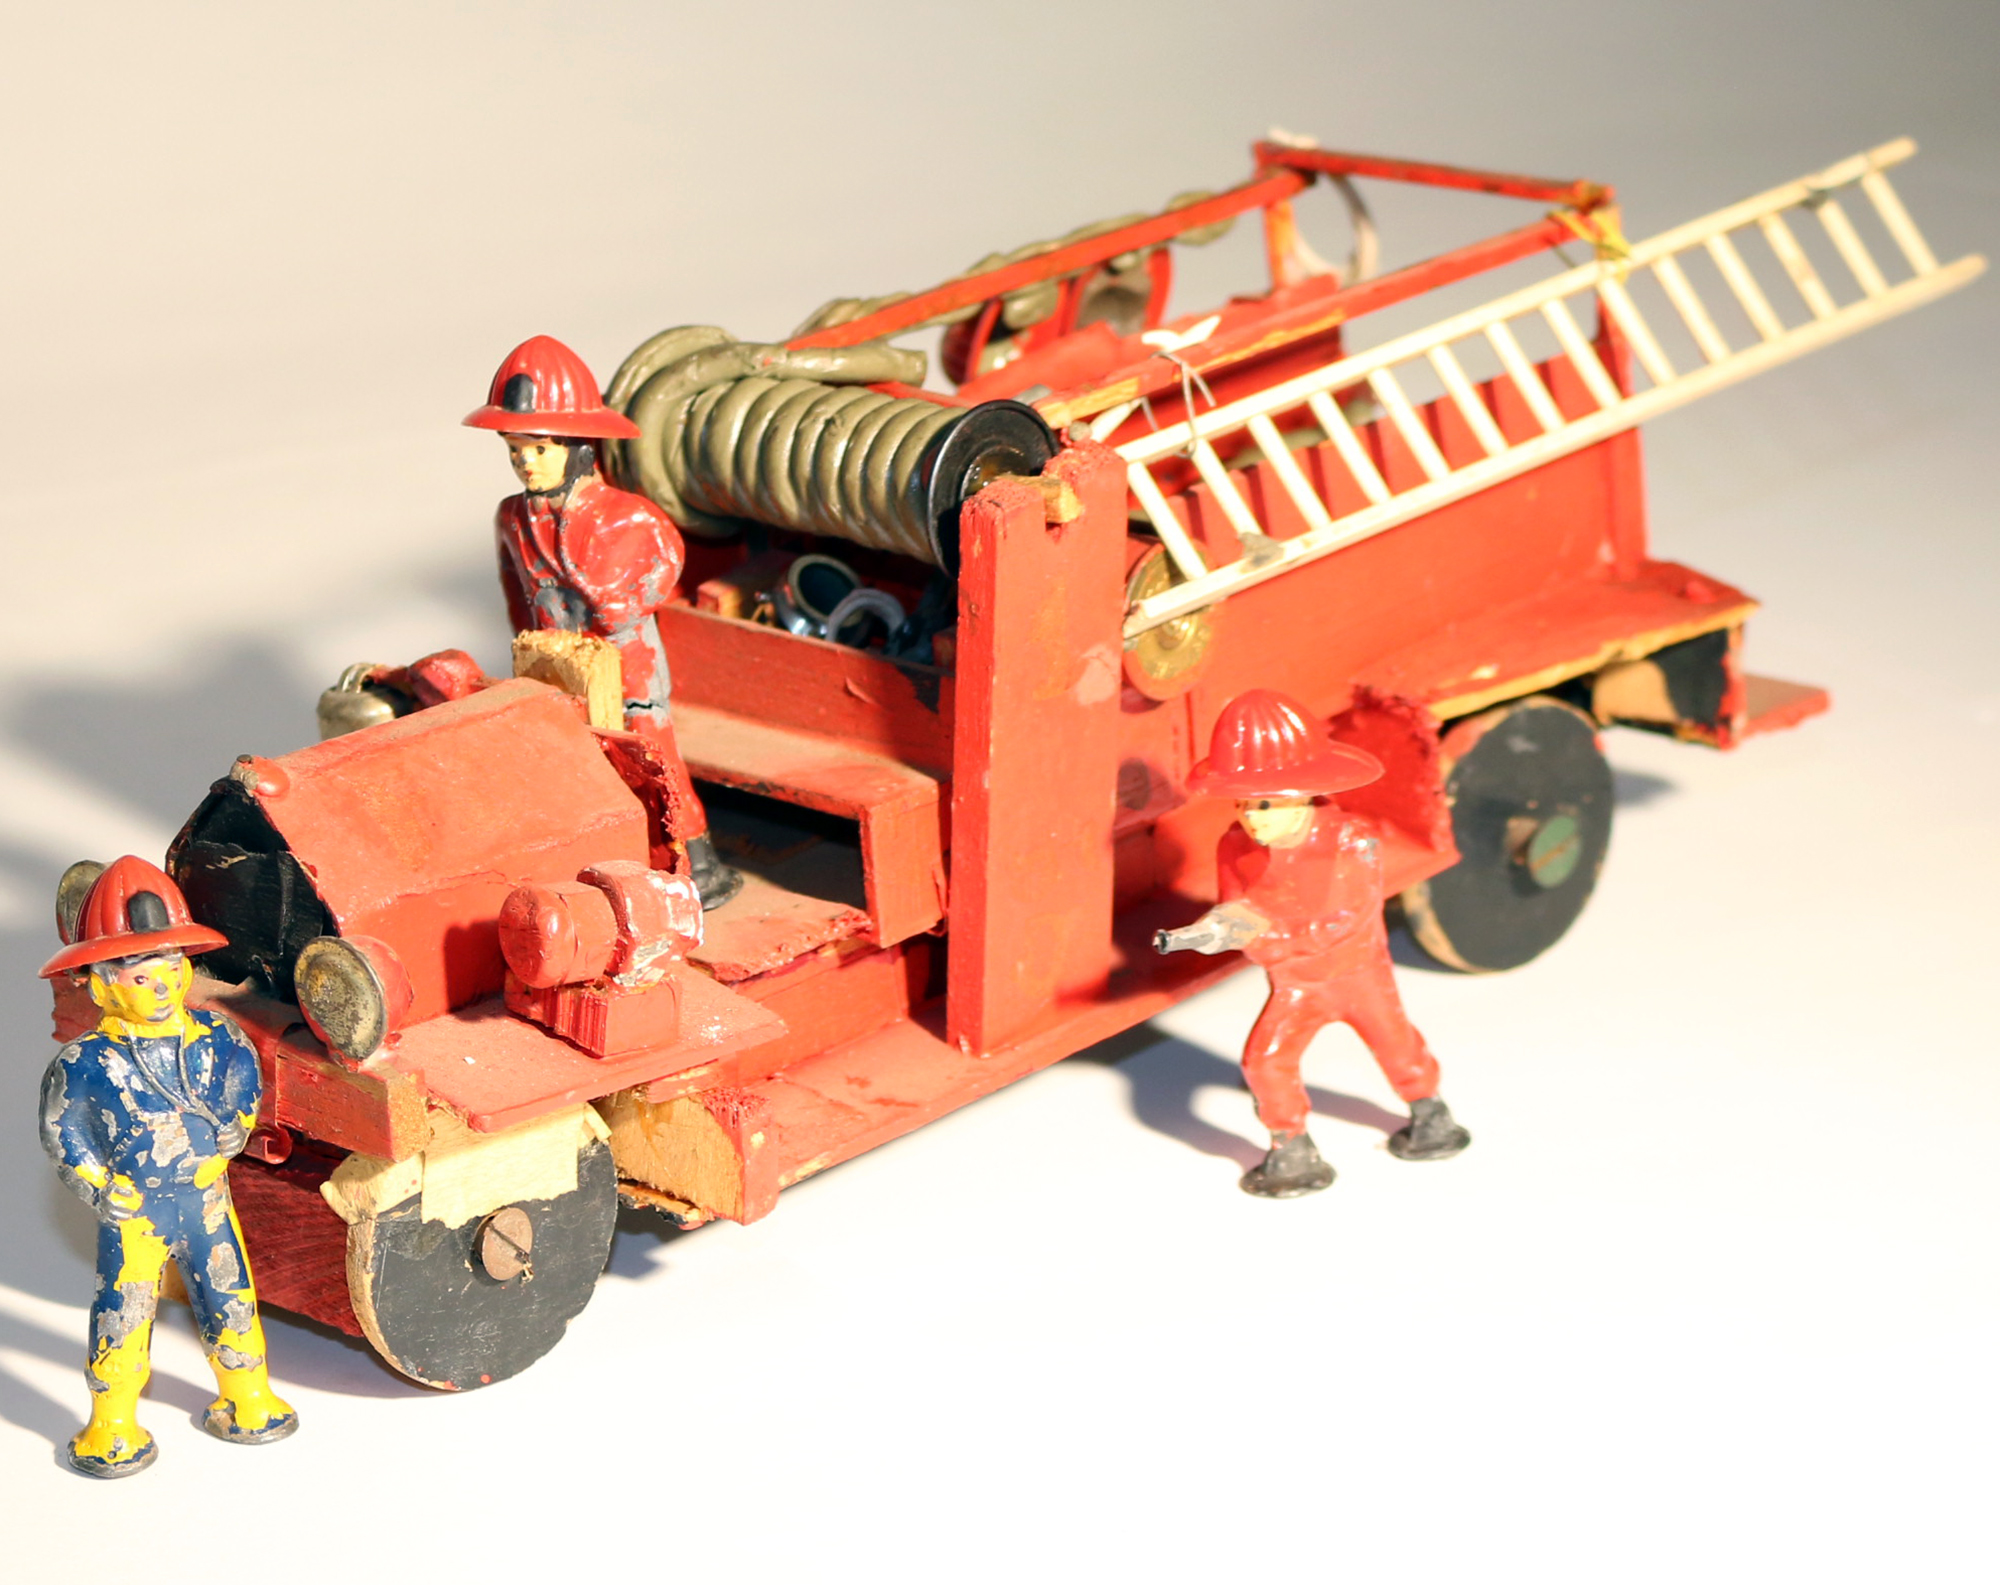 John's first fire engine model.